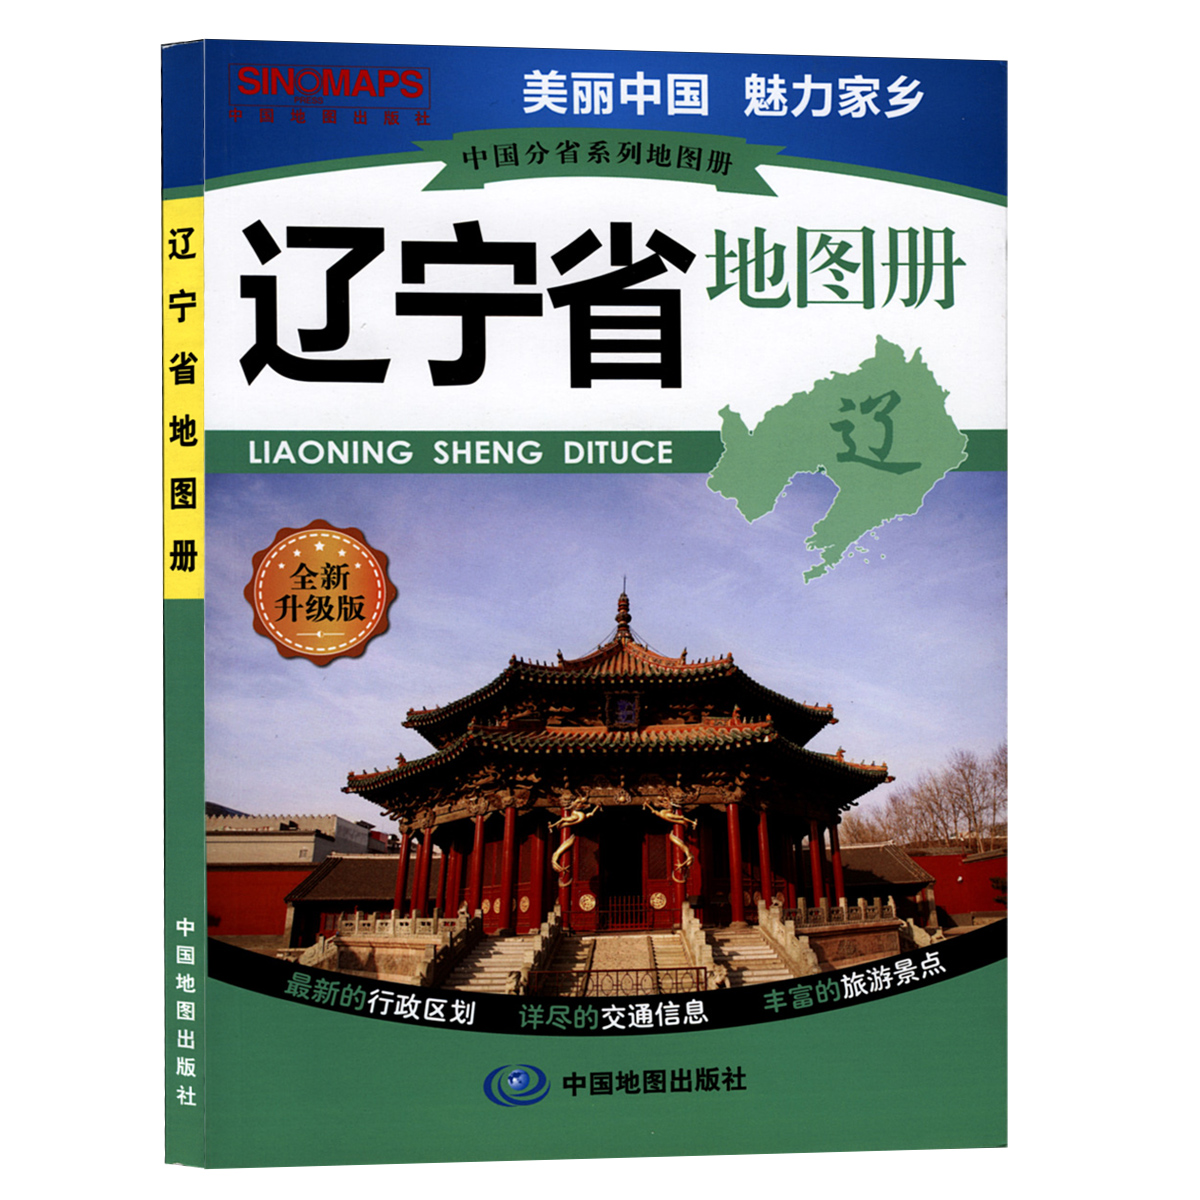 2014年 辽宁省地图册 中国地图册分省系列 高清